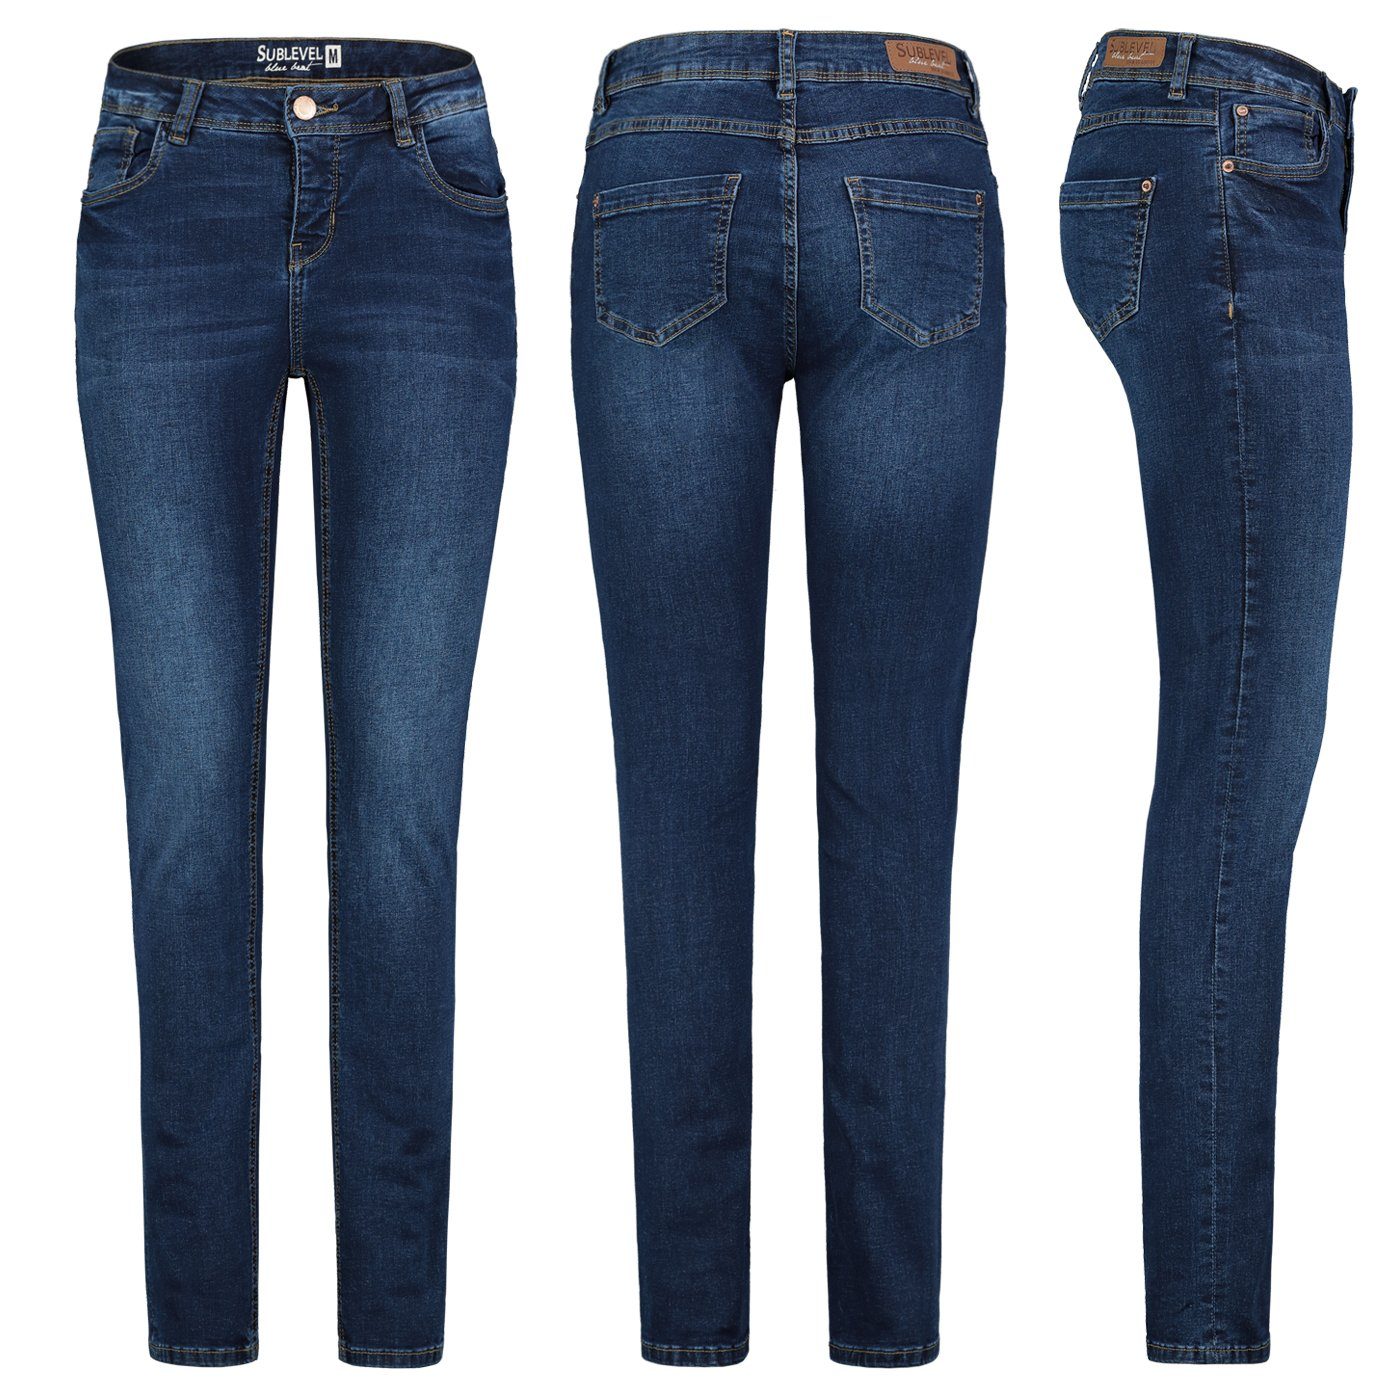 SUBLEVEL Slim-fit-Jeans Sublevel Stretch Slim Denim Jeans Jeanshose Hose Röhre Dunkelblau Damen Fit Hose